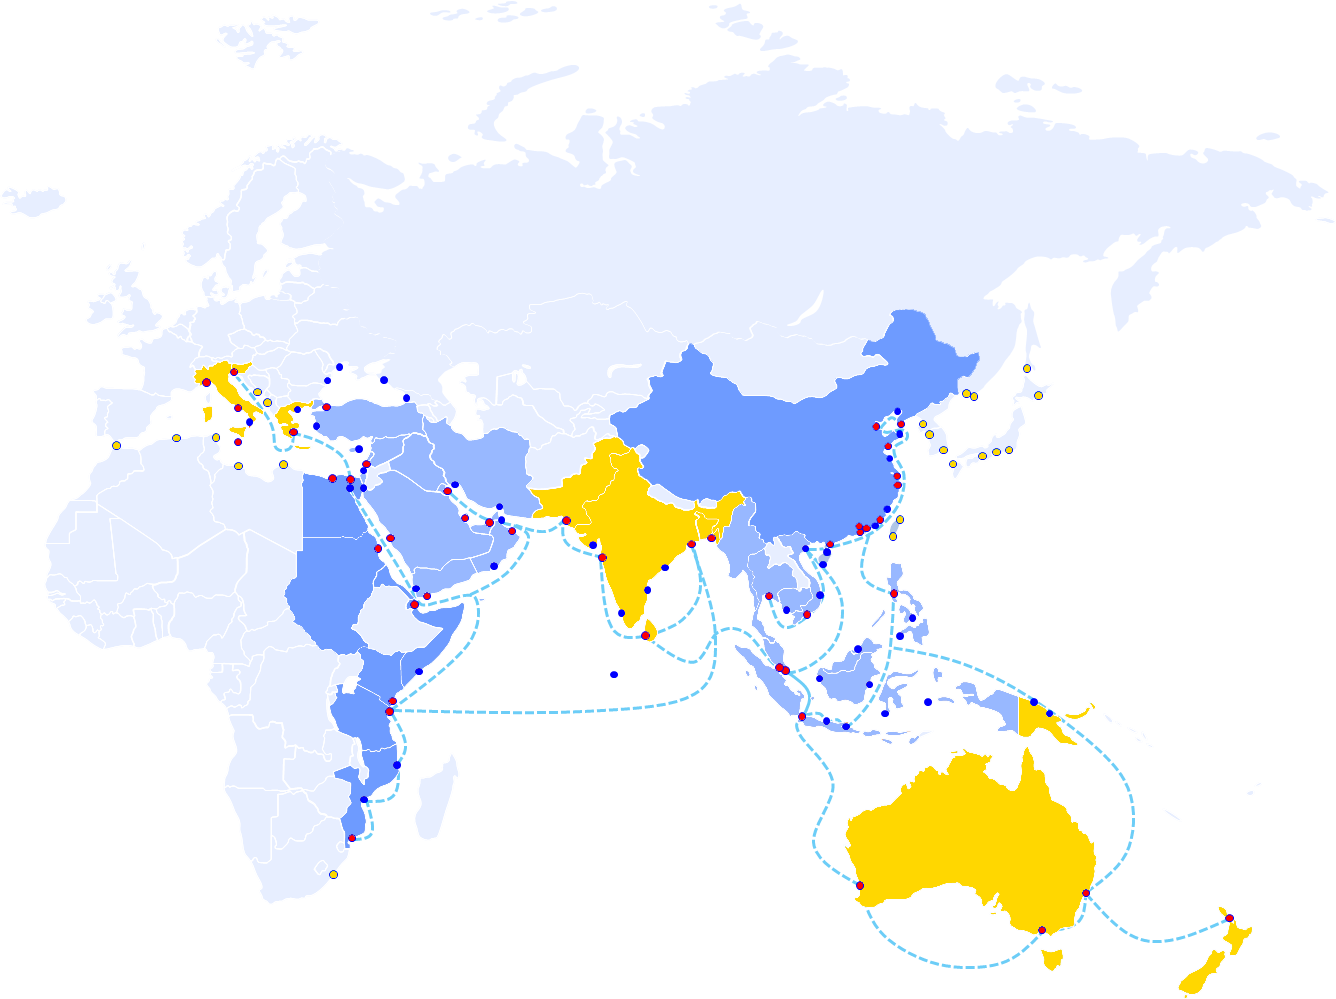 maritimesilkroadbol map,maritimesilkroadbol data,tendata,import export data